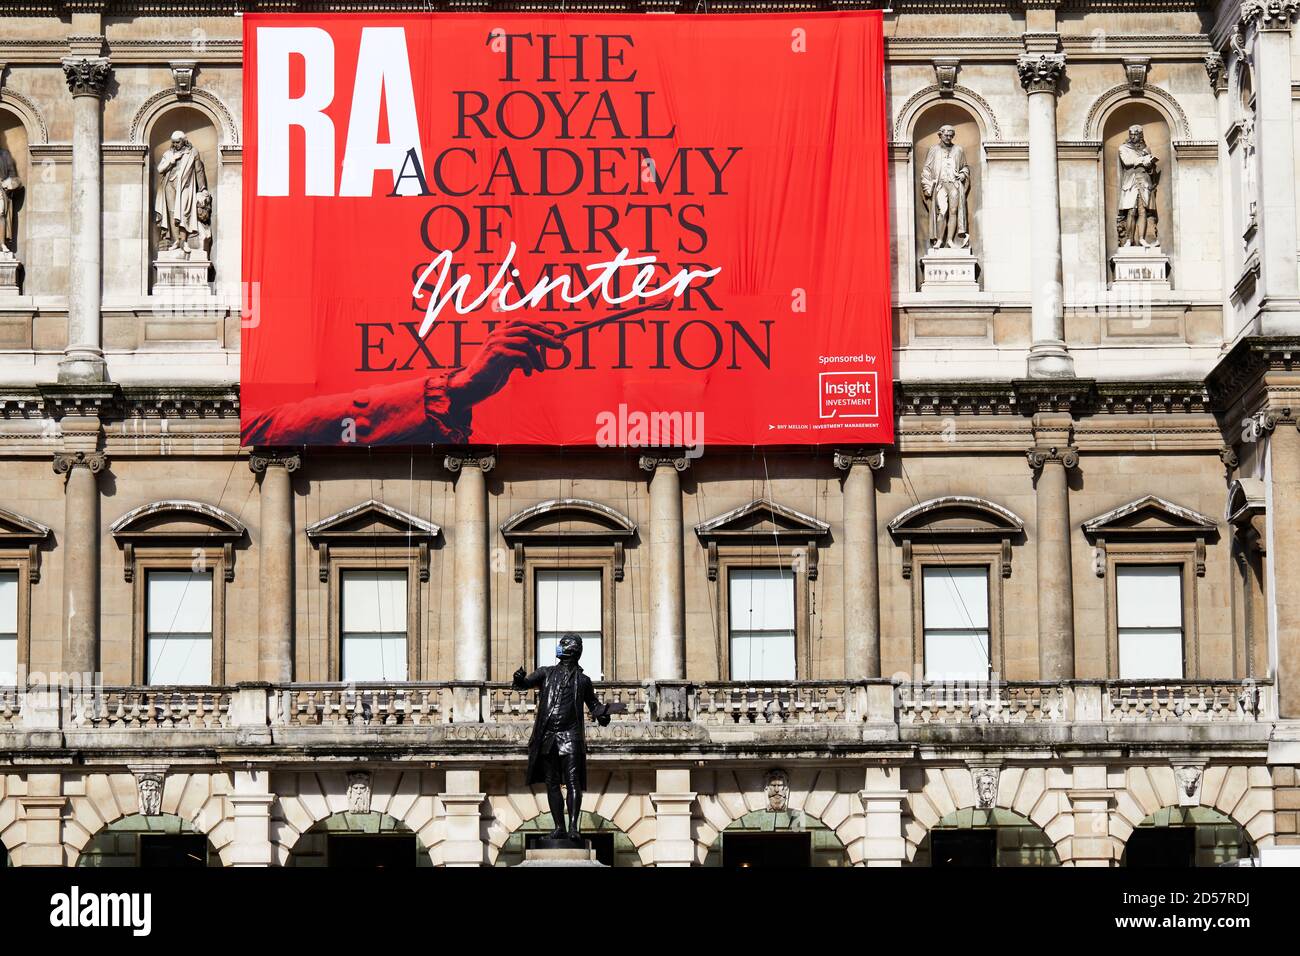 Londra, Regno Unito. - 5 Ott 2020: Una statua mascherata di fronte ad un banner che pubblicizzava la tradizionale mostra estiva della Royal Academy, ritardata fino ad ottobre a causa della pandemia del coronavirus. Foto Stock